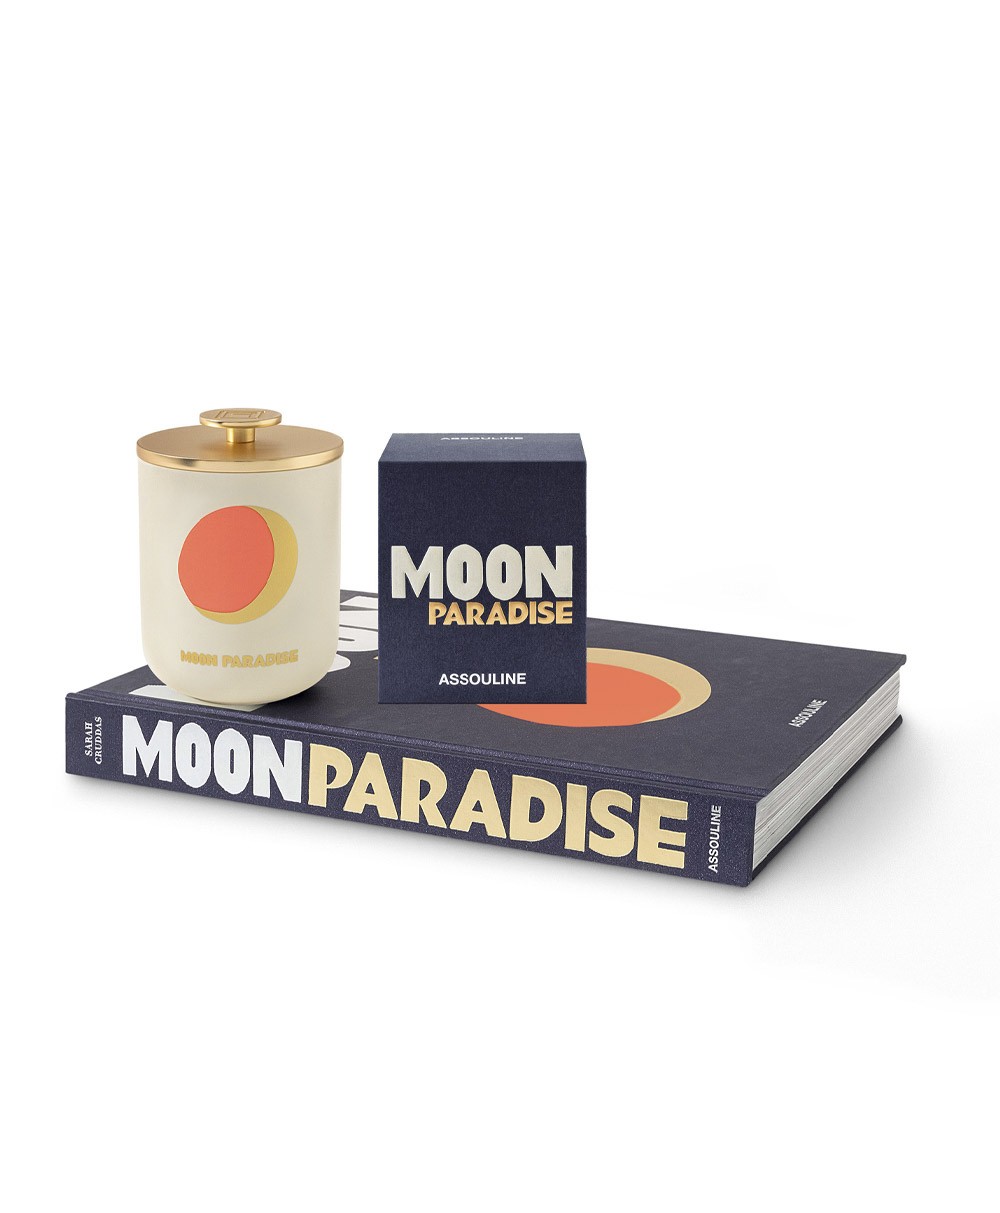 Dieses Bild zeigt das Produktbild der Travel from Home Candle Moon Paradise von Assouline im RAUM concept store